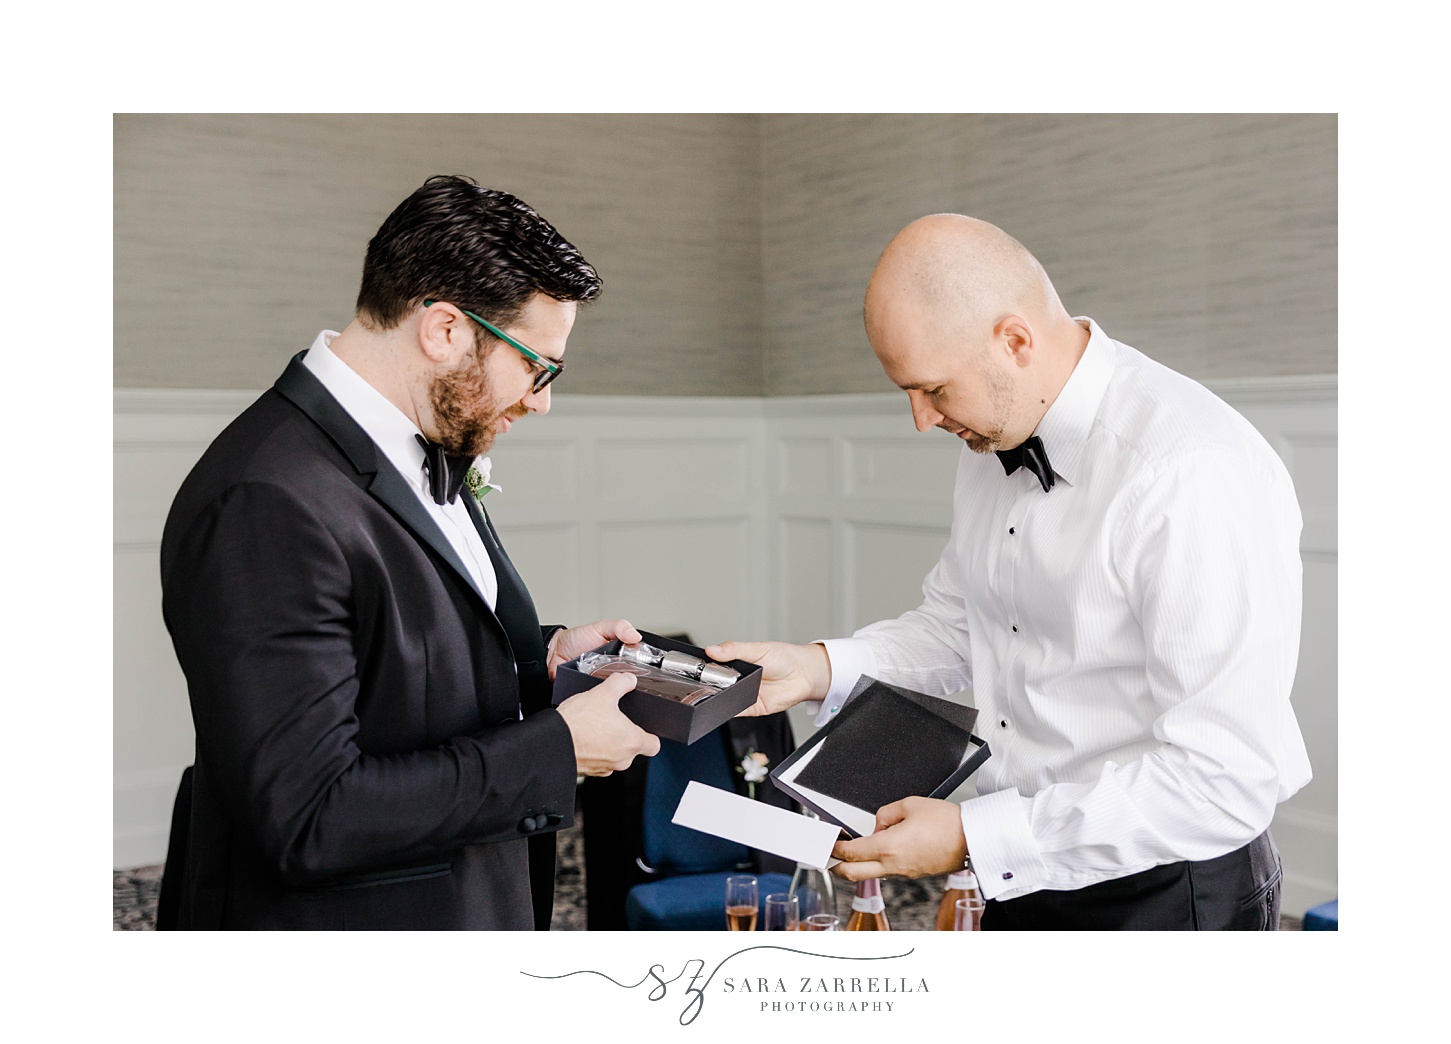 groomsman helps groom open gift on wedding day